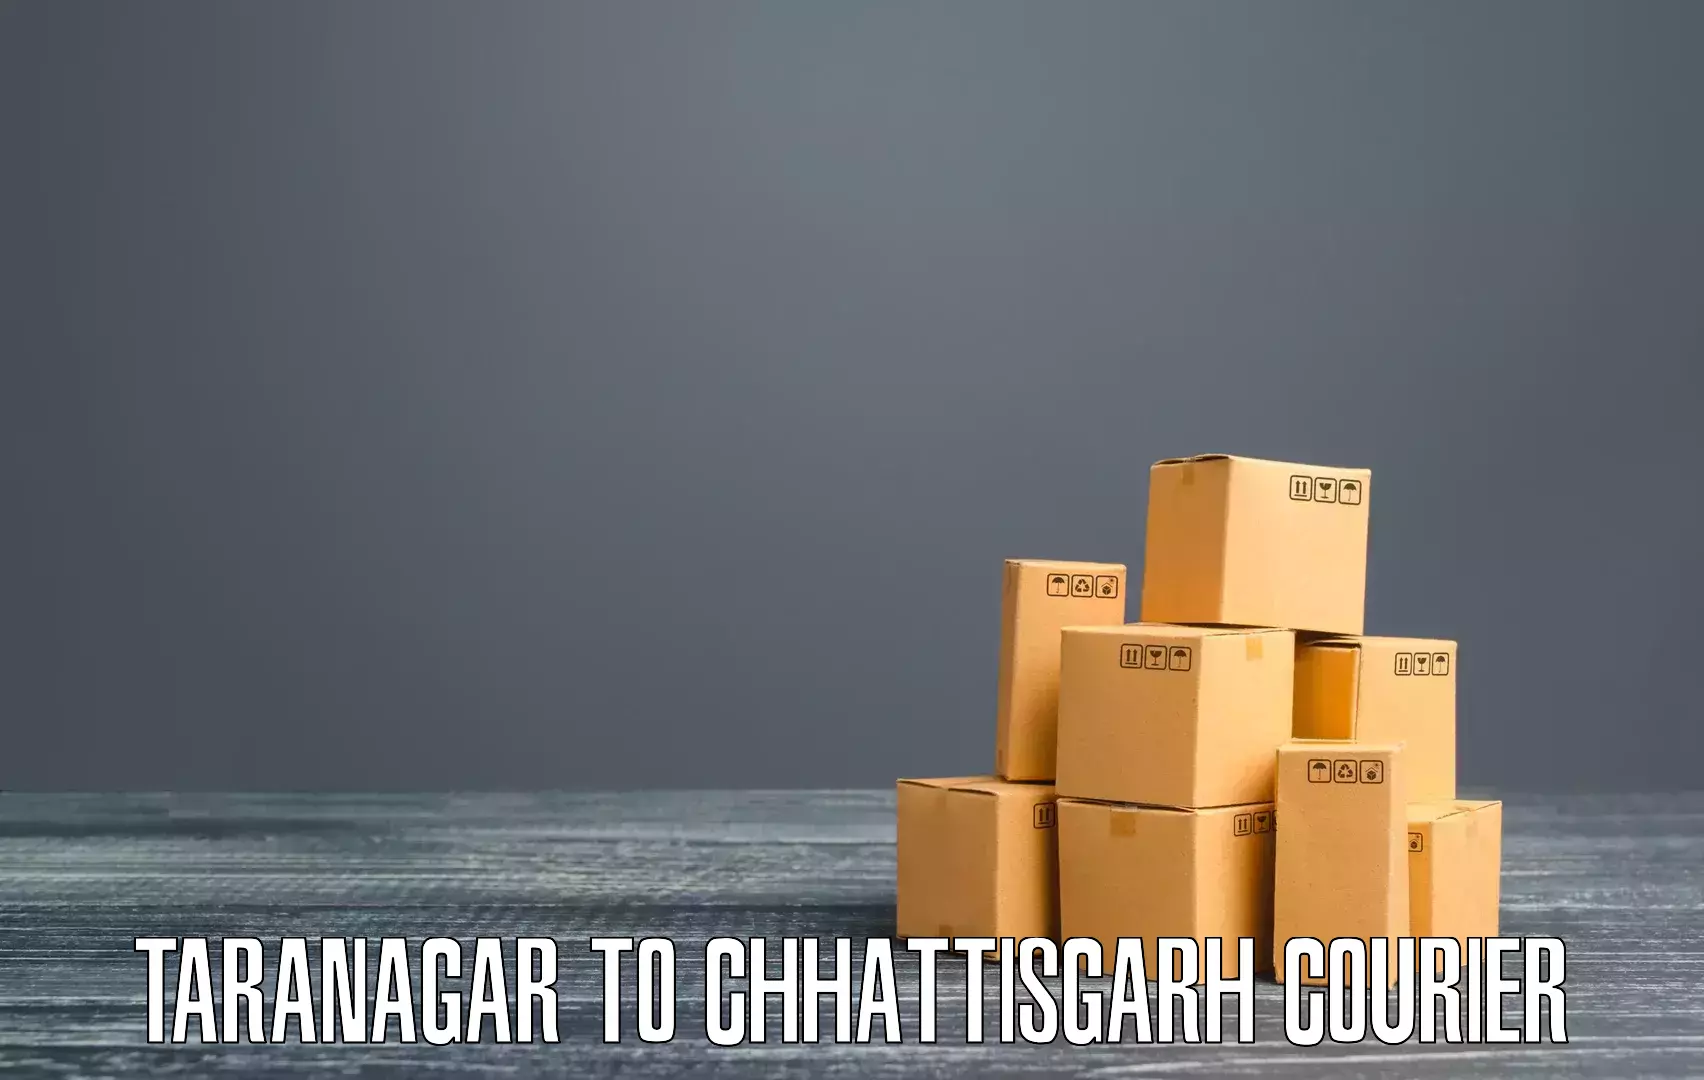 Efficient freight service in Taranagar to Gariaband